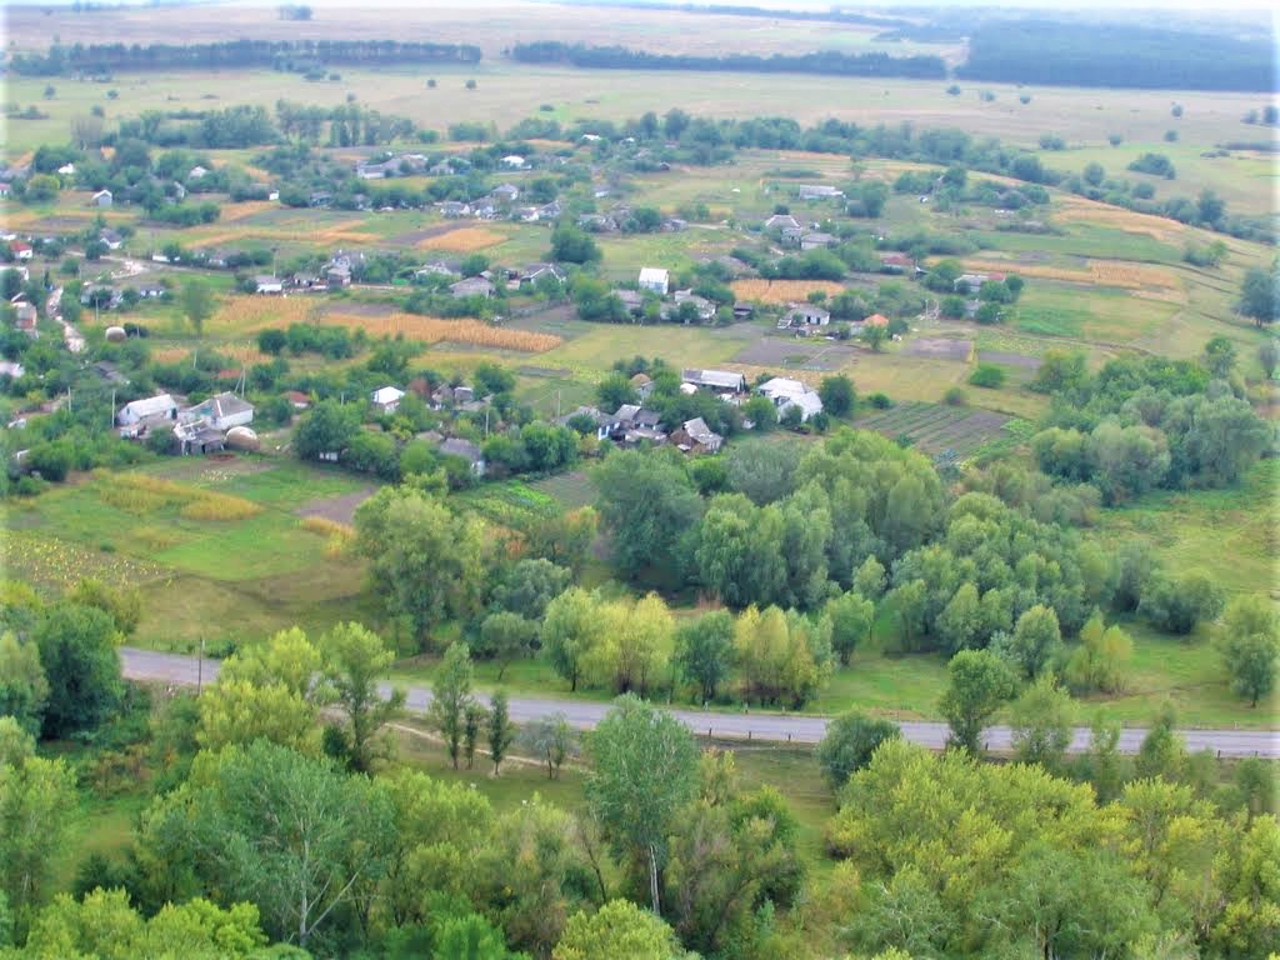 Verkhnia Manuilivka village